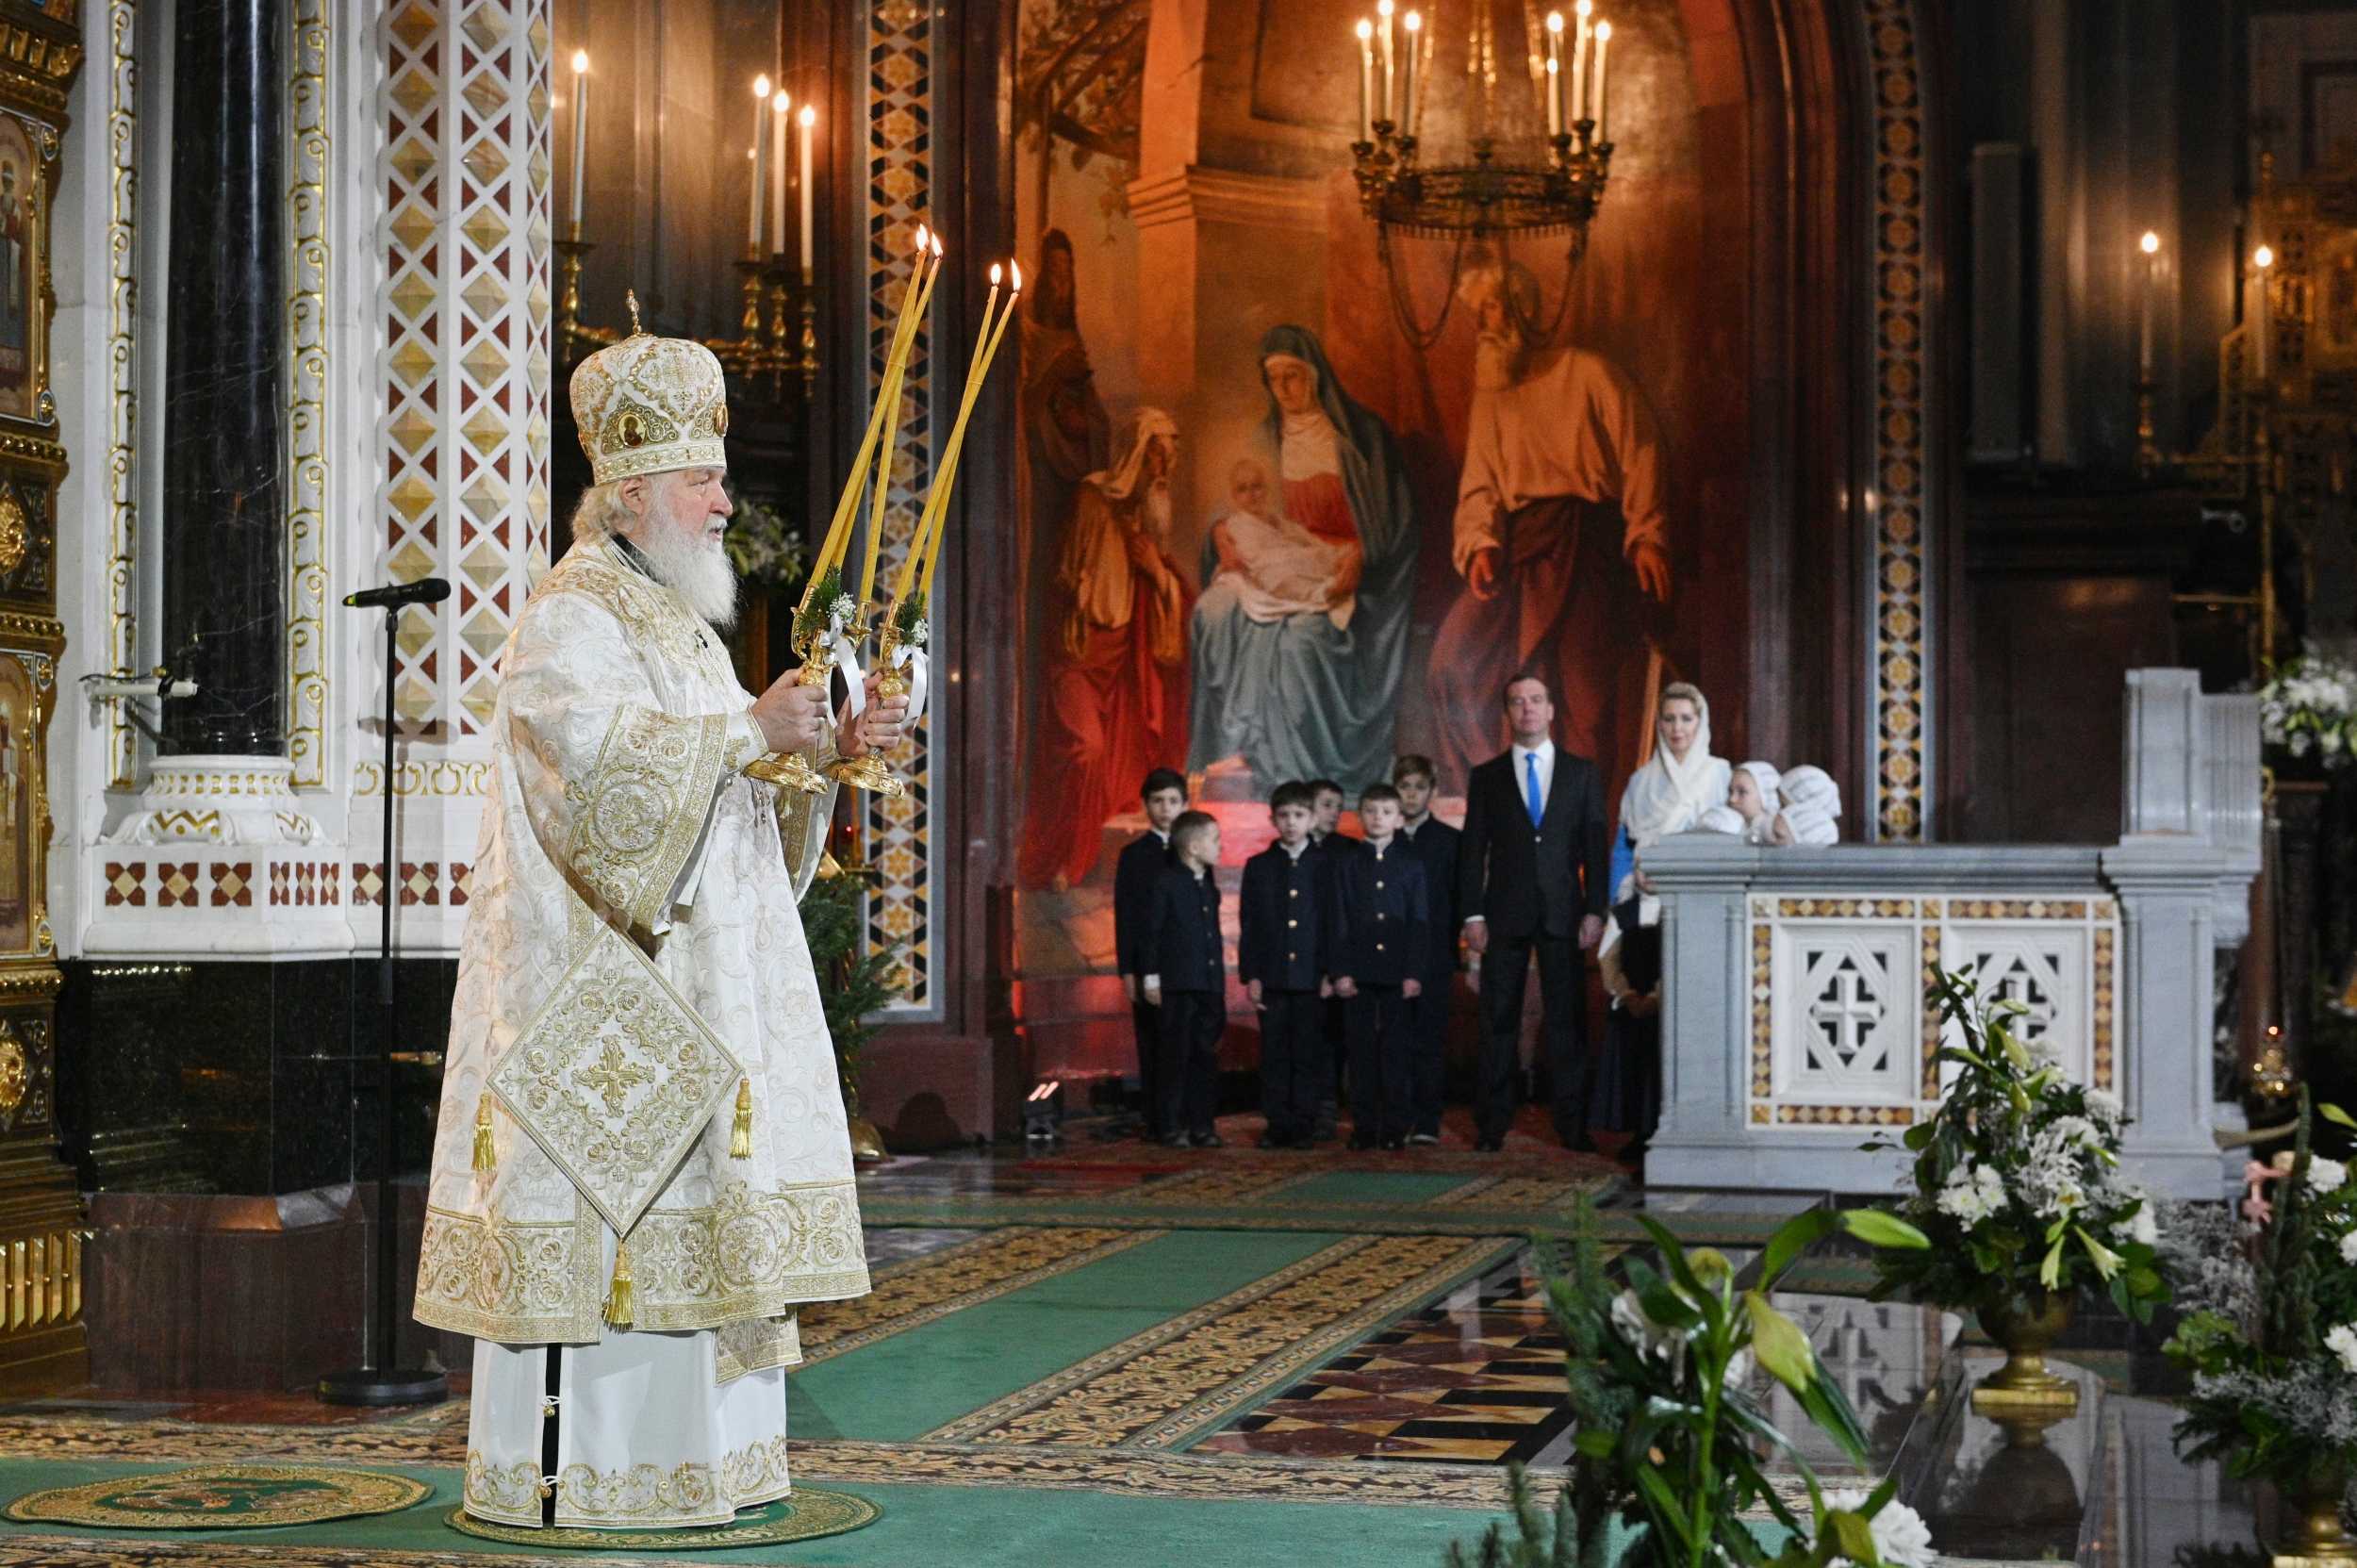 В светлые рождественские дни сердца православных христиан наполнены любовью и верой в торжество добра